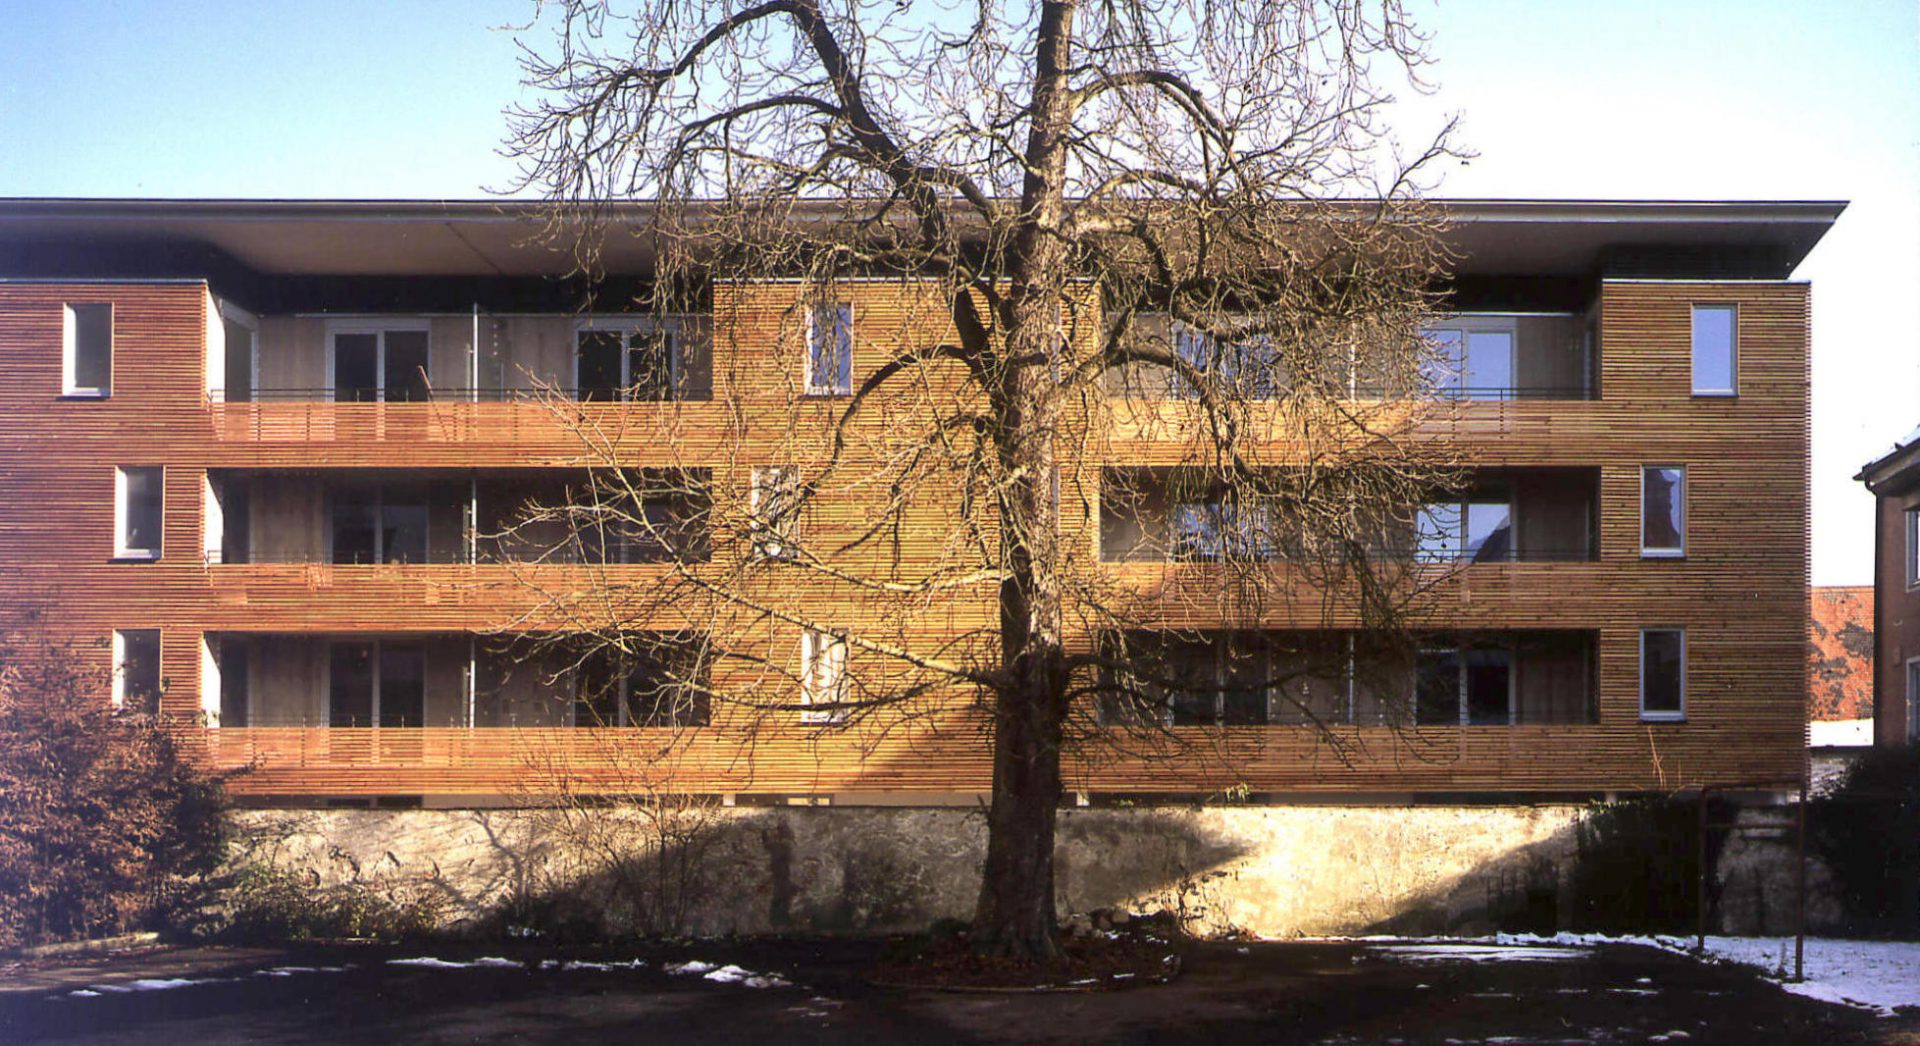 Wohnanlage Gymnasiumstraße